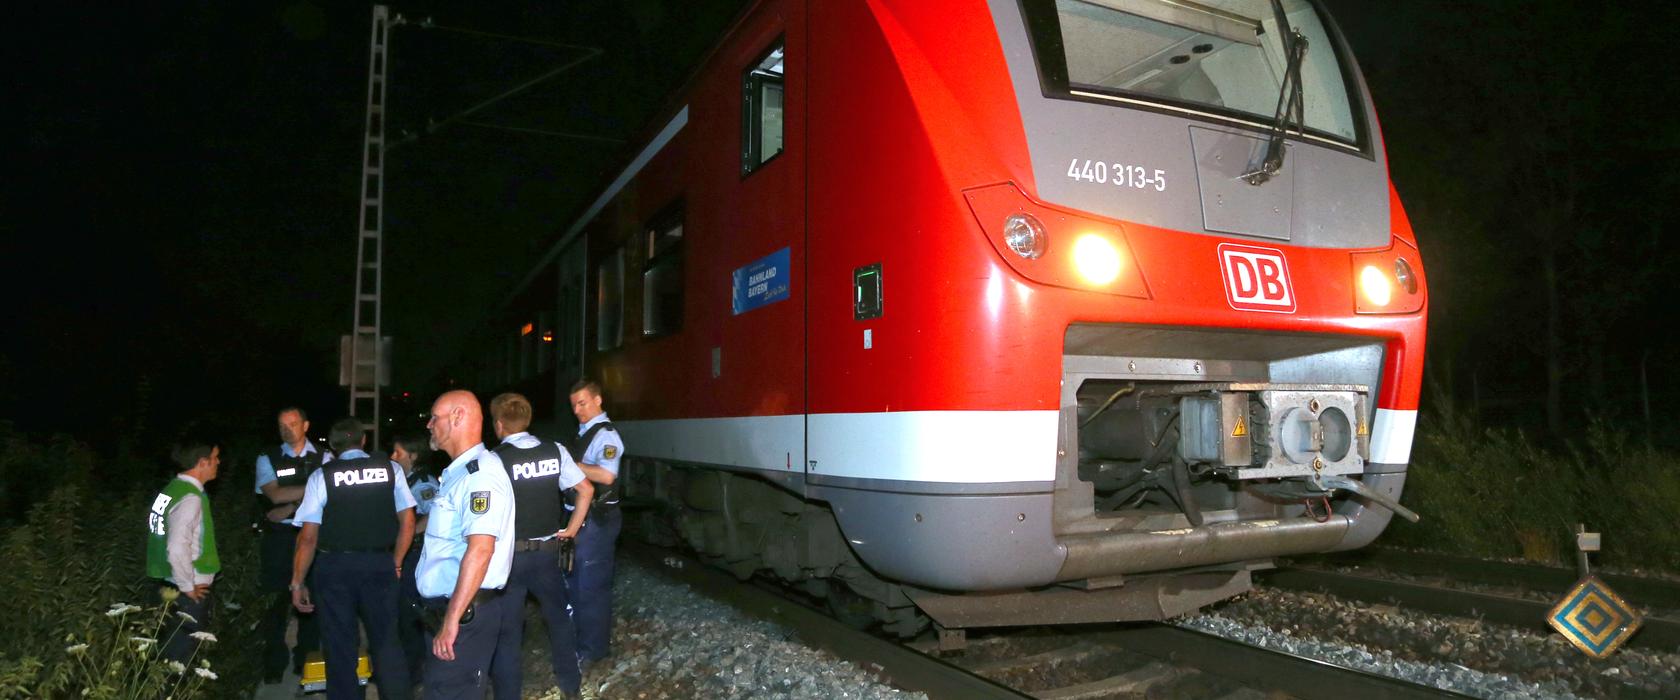 Polizisten stehen kurz nach der Tat in Würzburg neben einem Regionalzug. Ein Mann hatte in dem Zug Reisende angegriffen und mehrere Menschen lebensgefährlich verletzt.